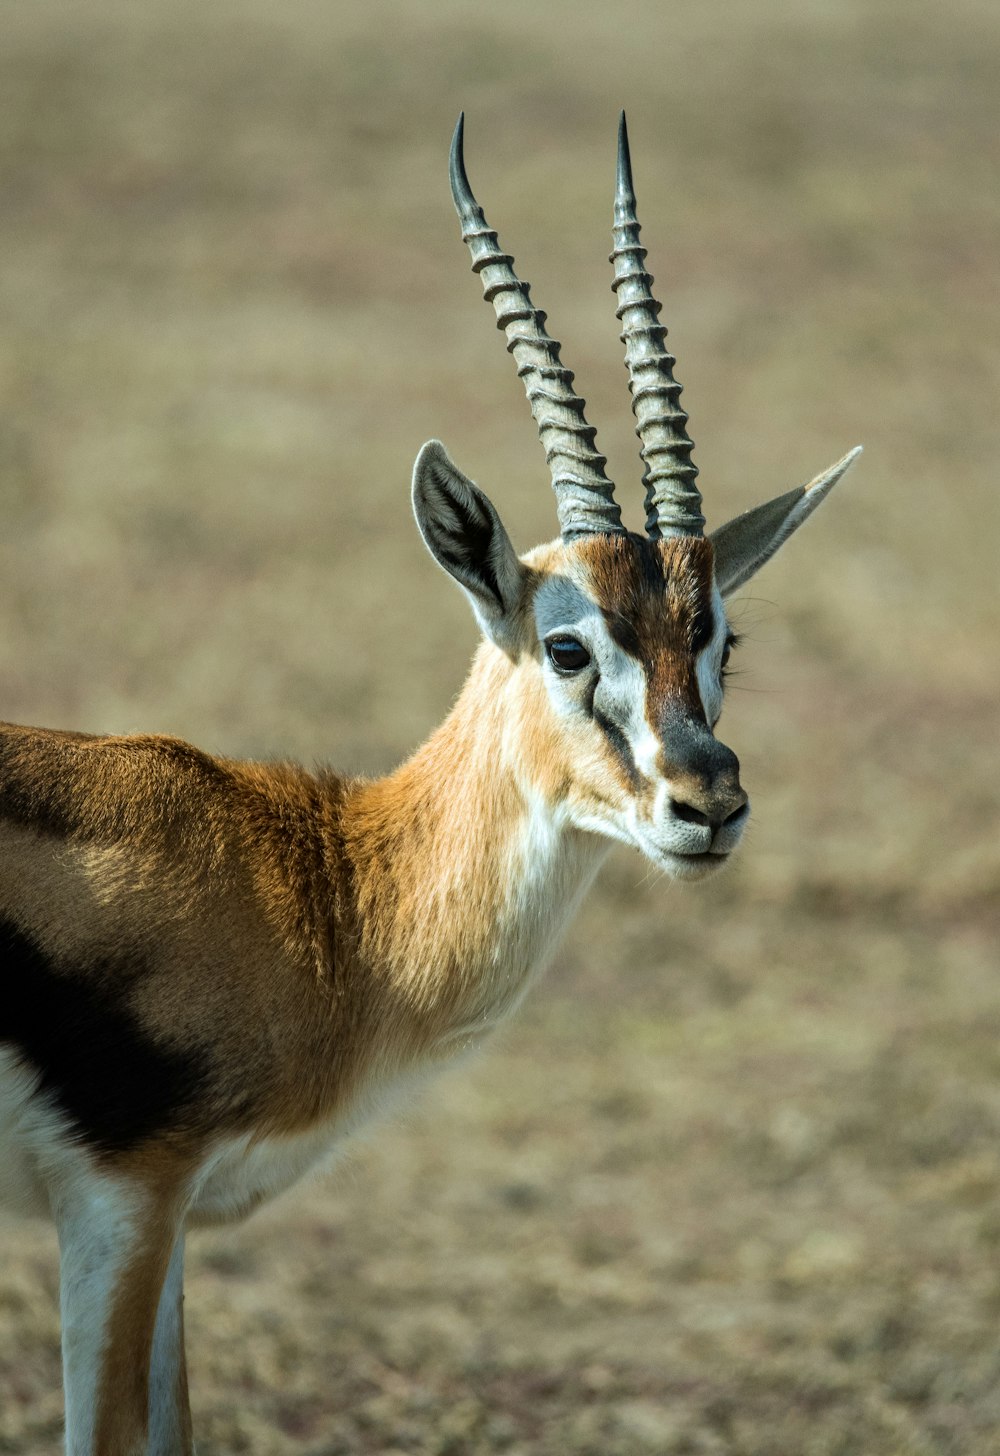 Photographie sélective de l’antilope debout sur le terrain pendant la journée